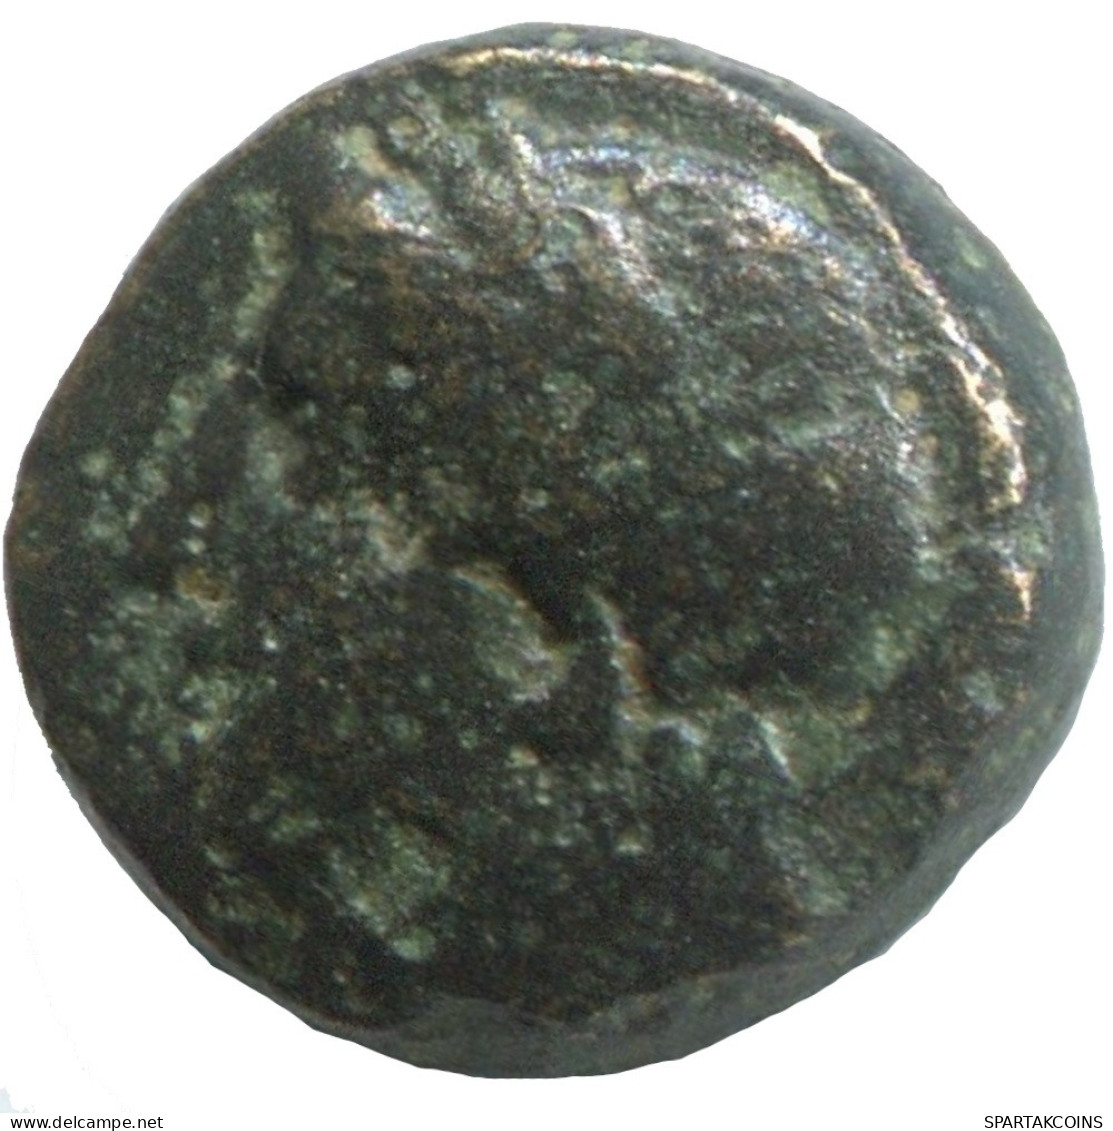 Ancient Antike Authentische Original GRIECHISCHE Münze 1.3g/10mm #SAV1319.11.D.A - Greche